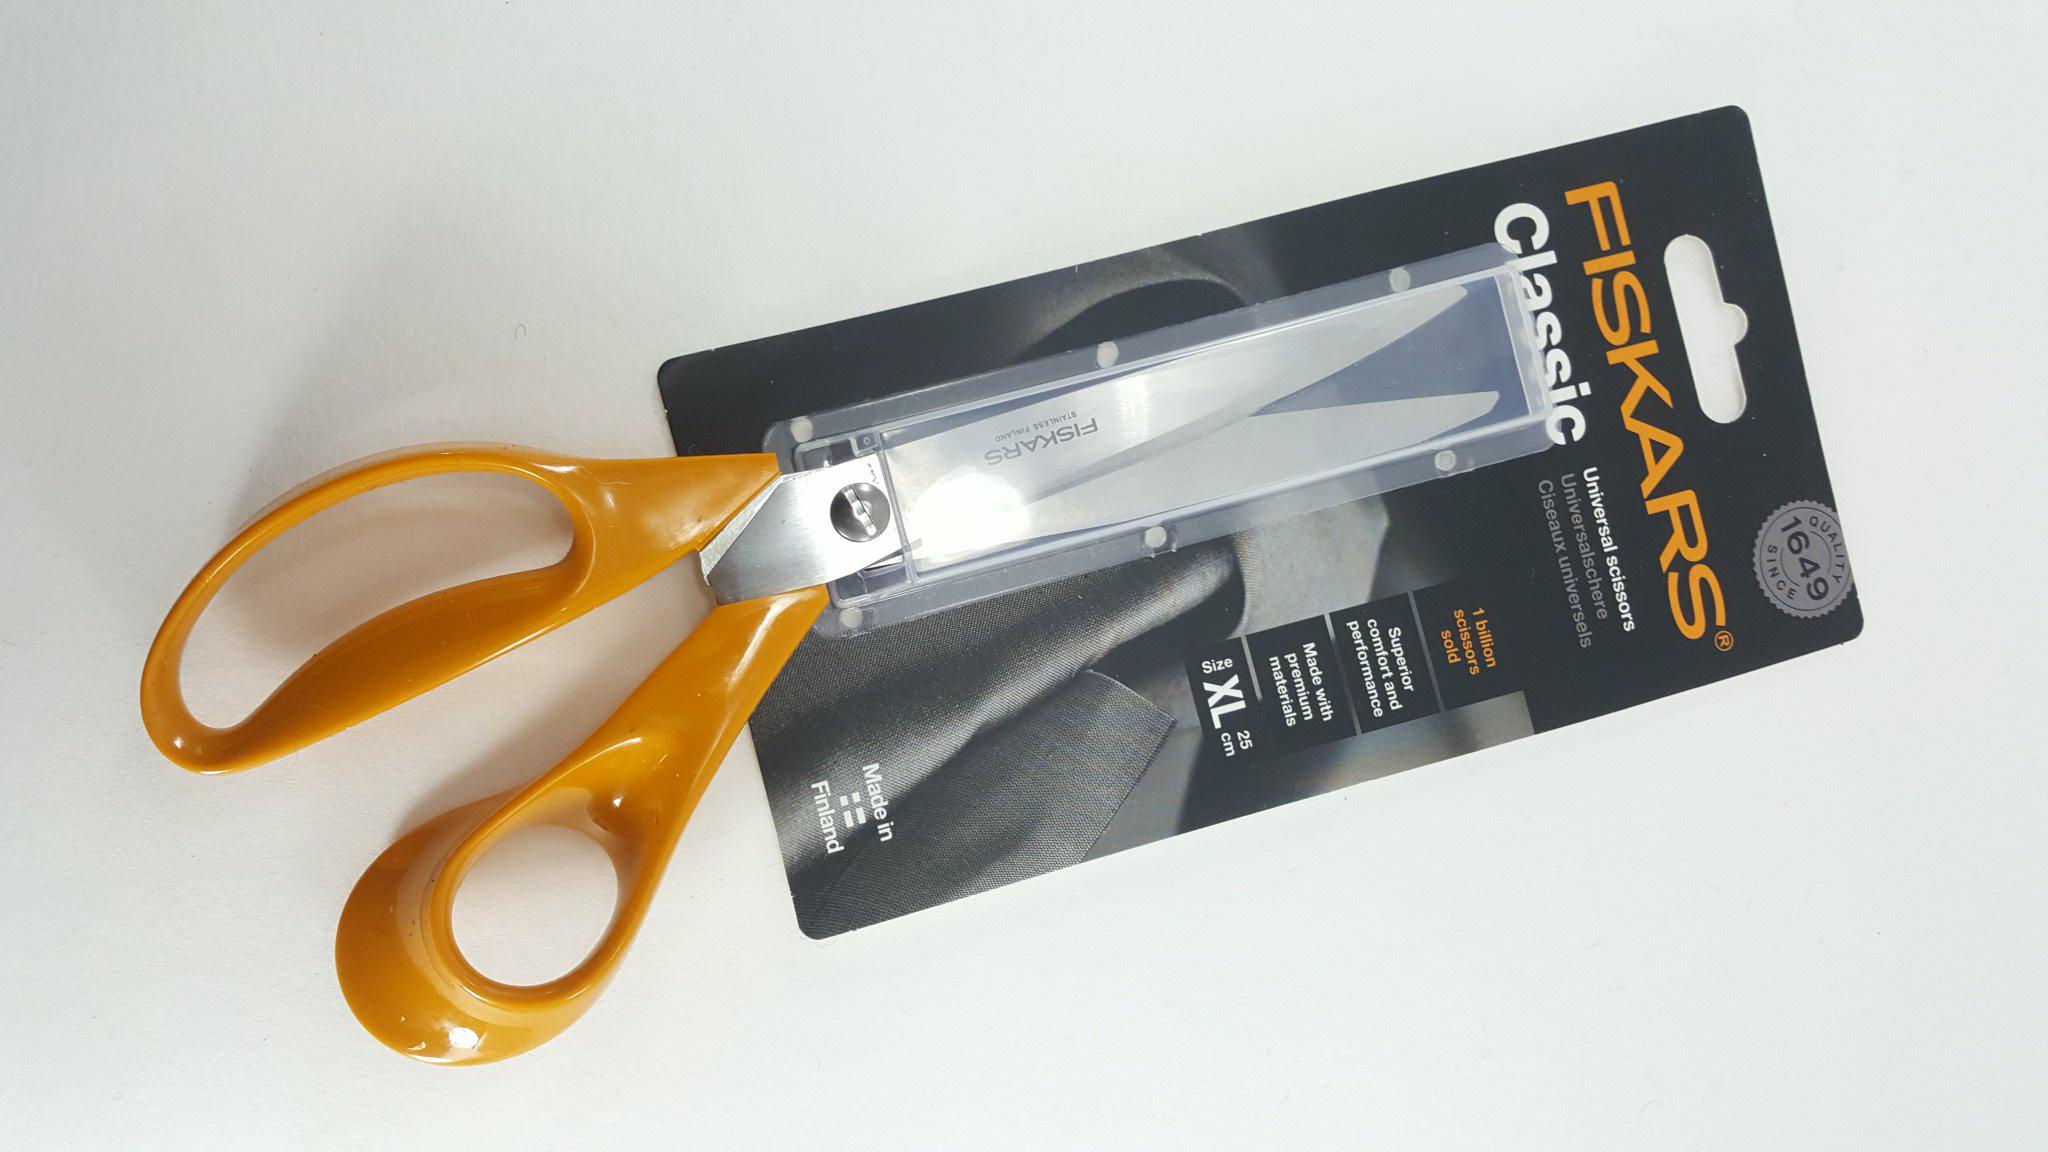 Fiskar tailor scissors